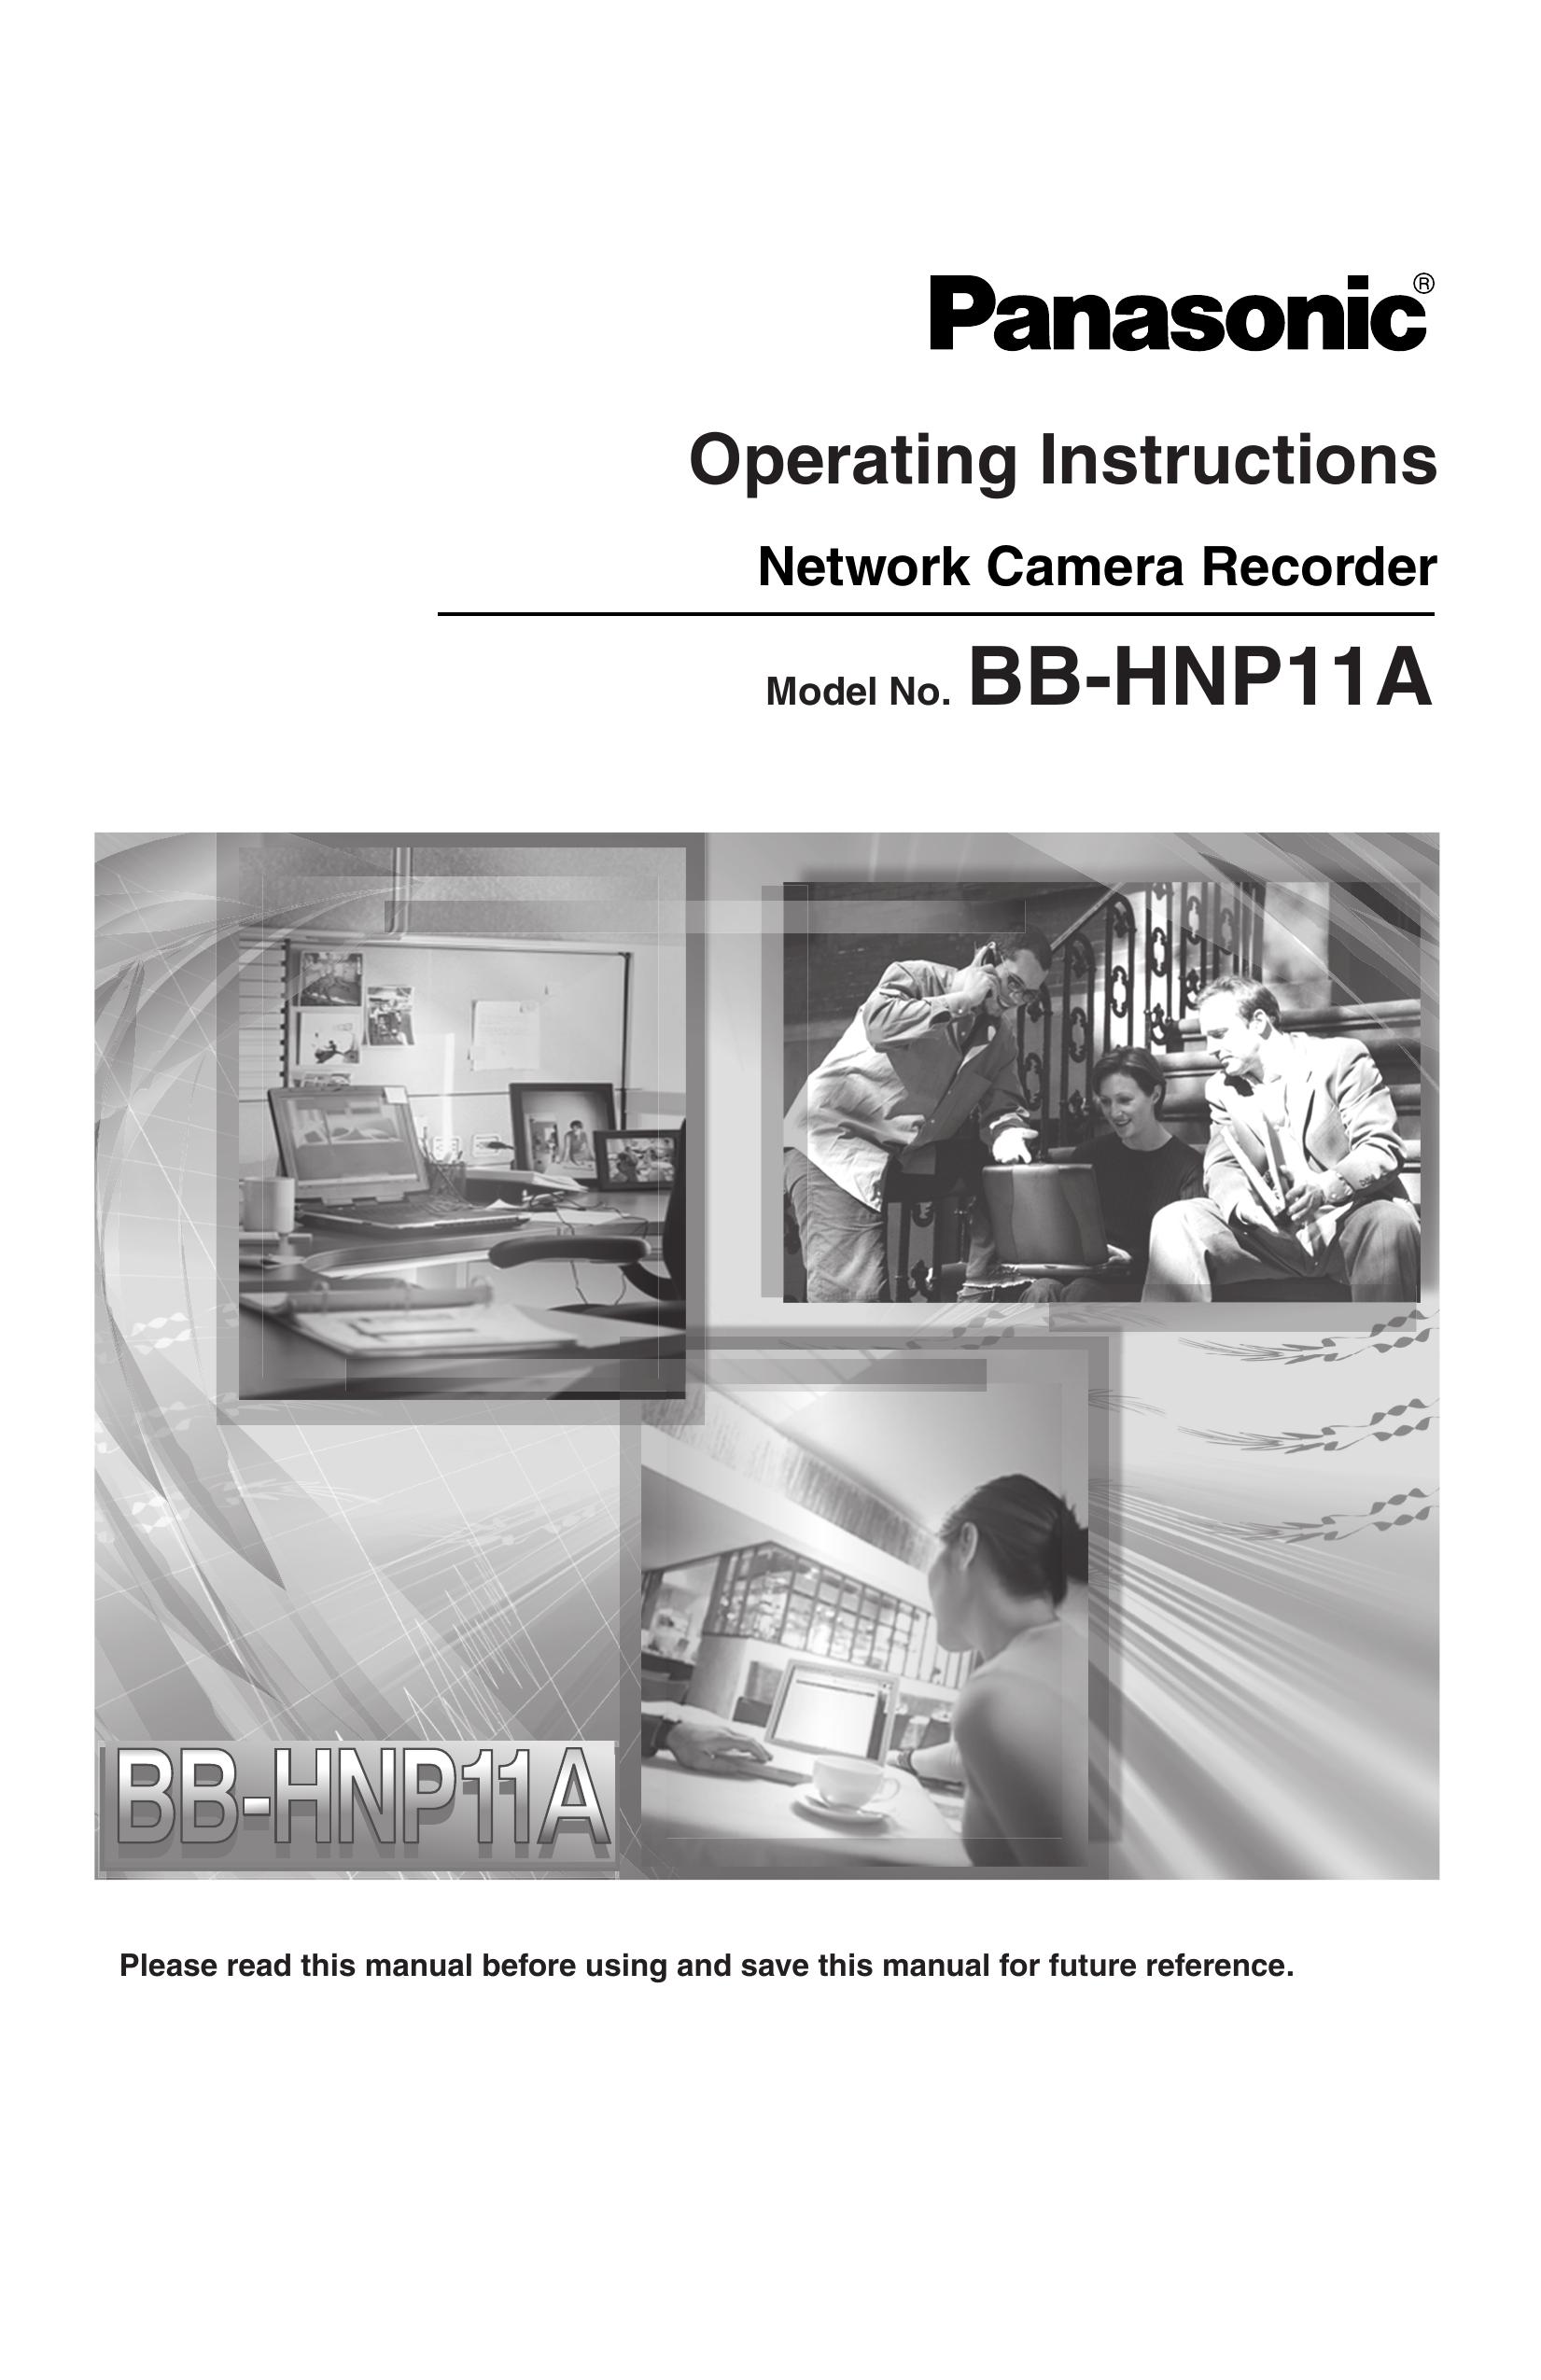 Panasonic BB-HNP11A Security Camera User Manual